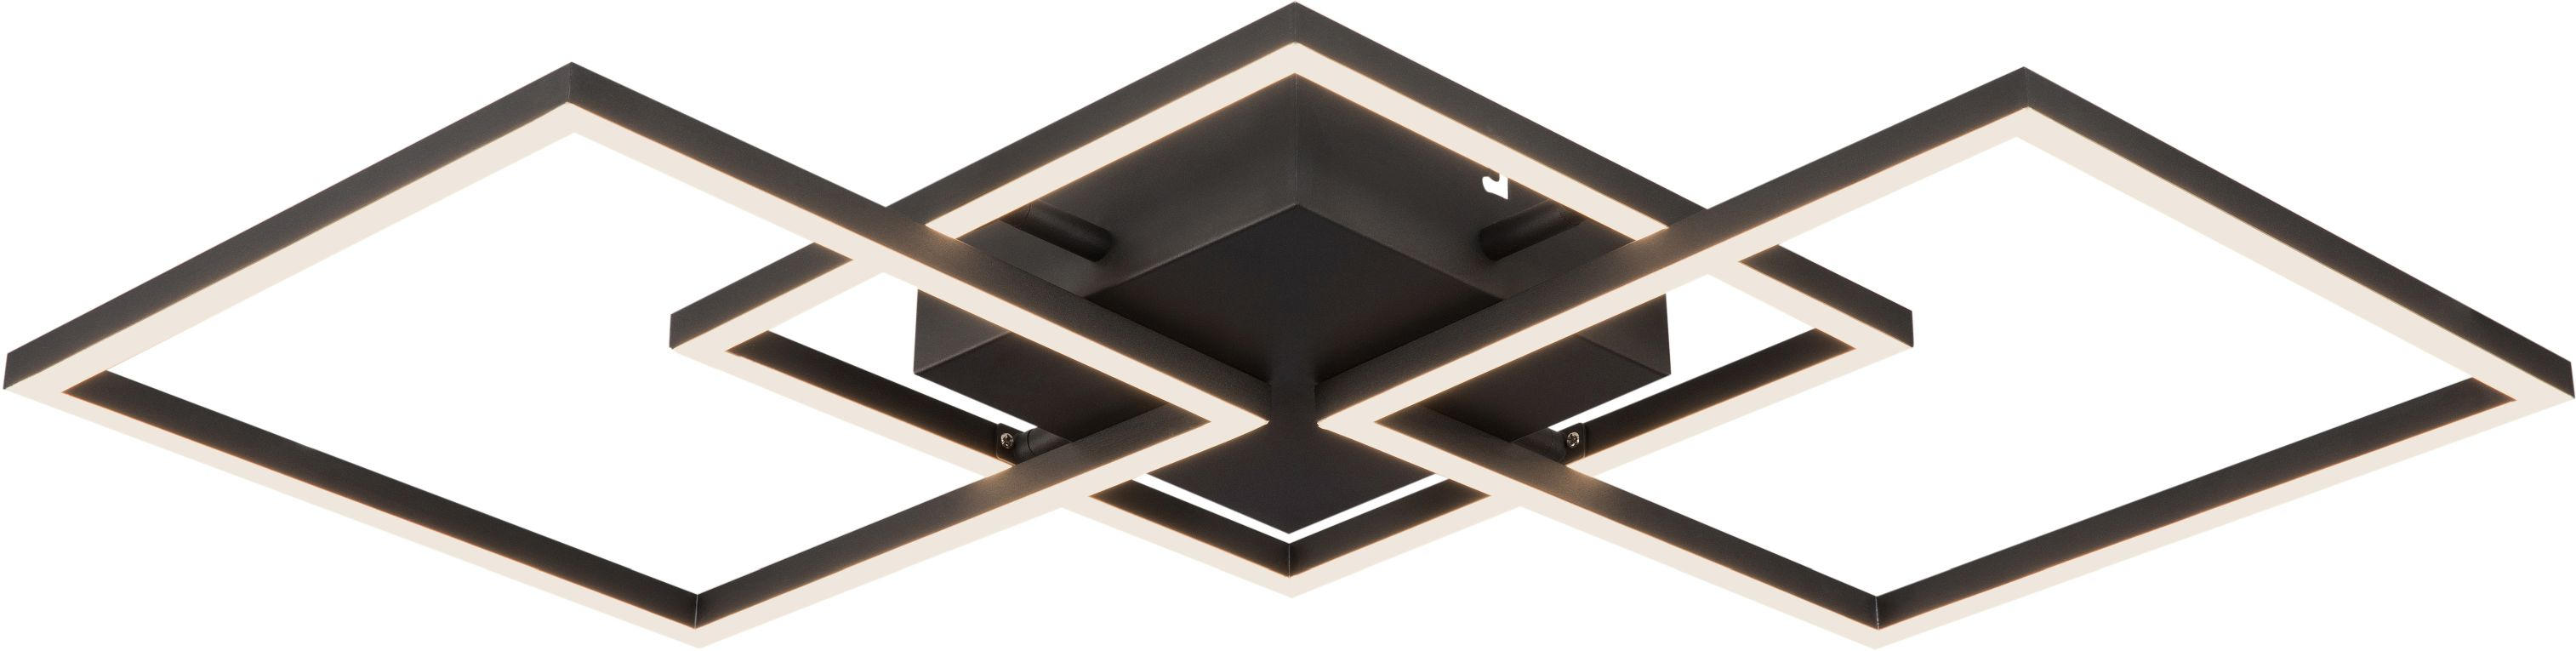 LED-TAKLAMPA 3,2 W    75,5/37/6 cm  - svart, Design, metall/plast (75,5/37/6cm) - Novel